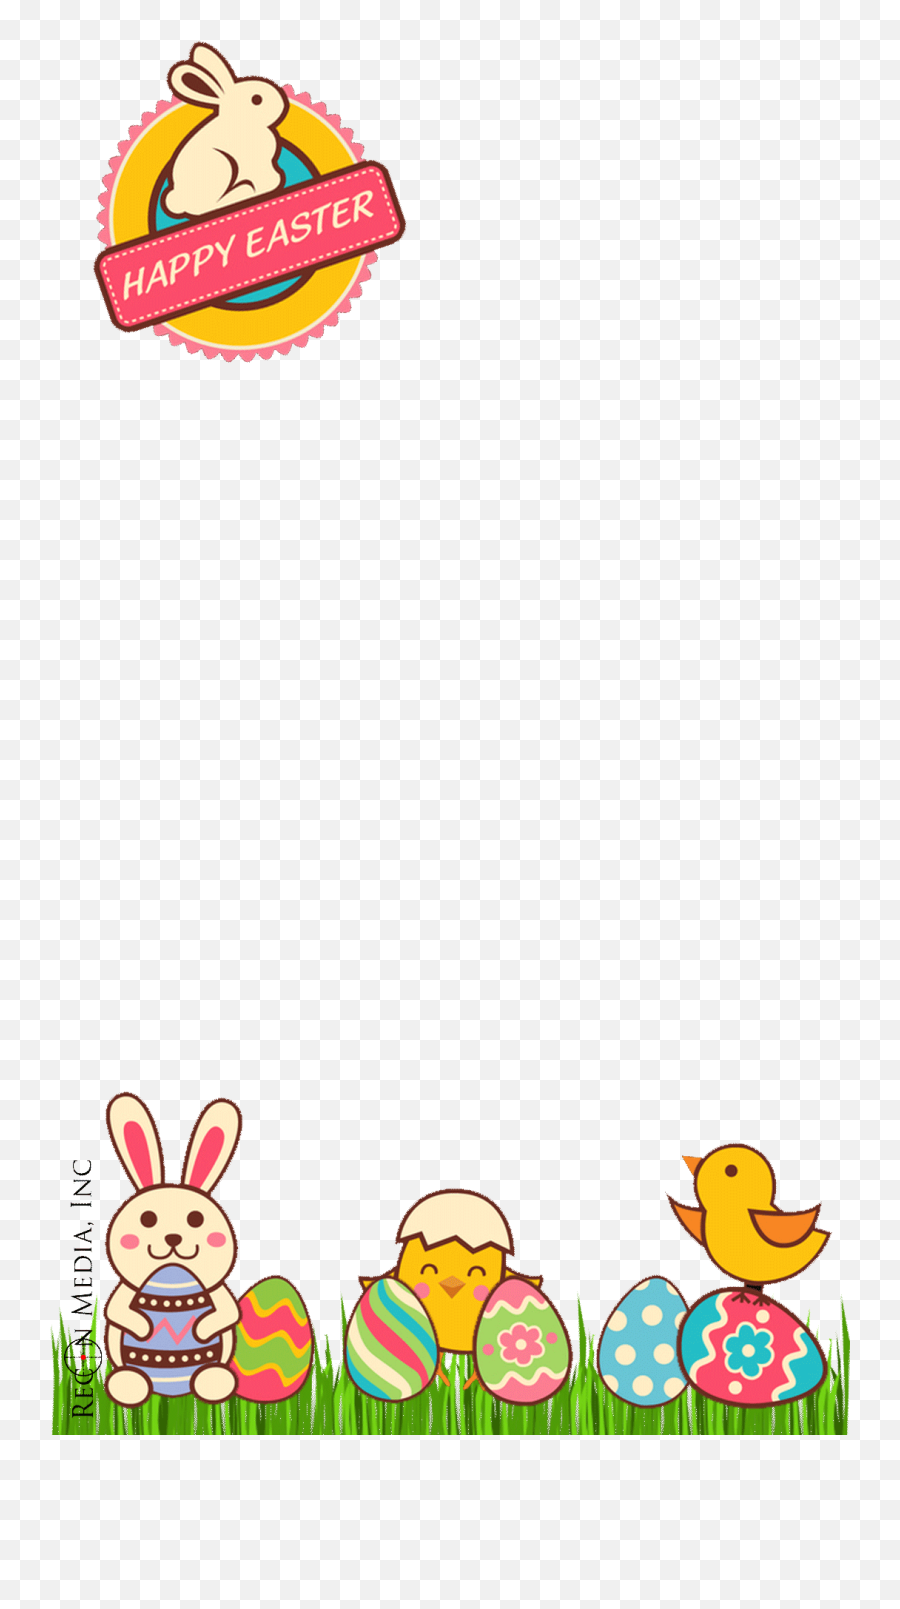 Download Our Custom Snapchat Filter Portfolio - Easter Emoji,Transparent Snapchat Filter